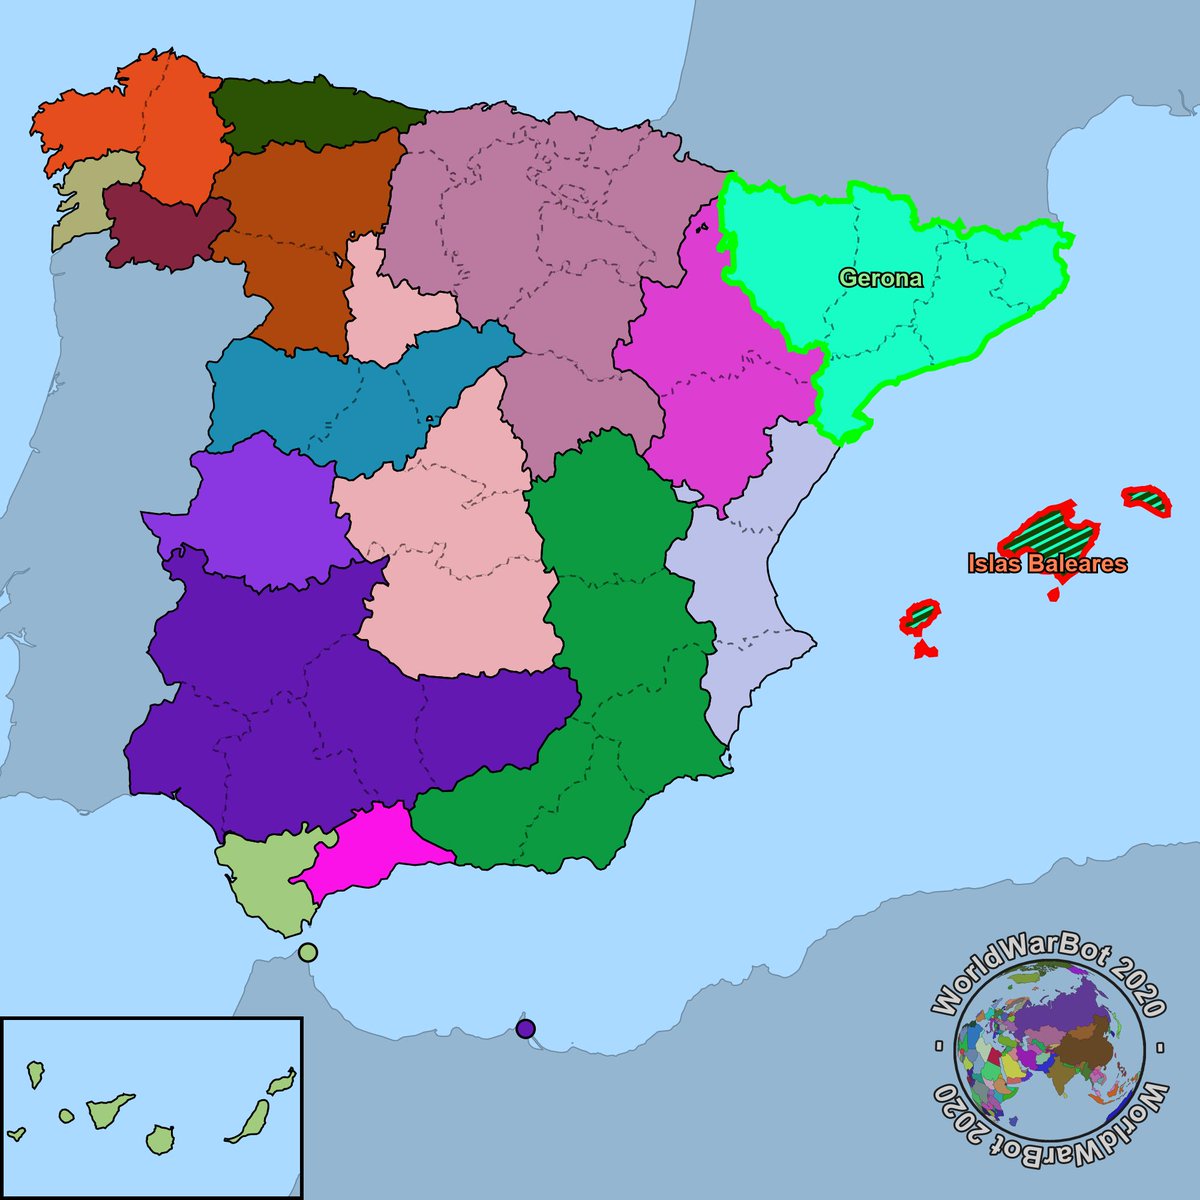 Segunda semana de junio, año 2021, Gerona ha conquistado la provincia de Islas Baleares.
Islas Baleares ha sido derrotada.
16 provincias restantes.
#Gerona #IslasBaleares